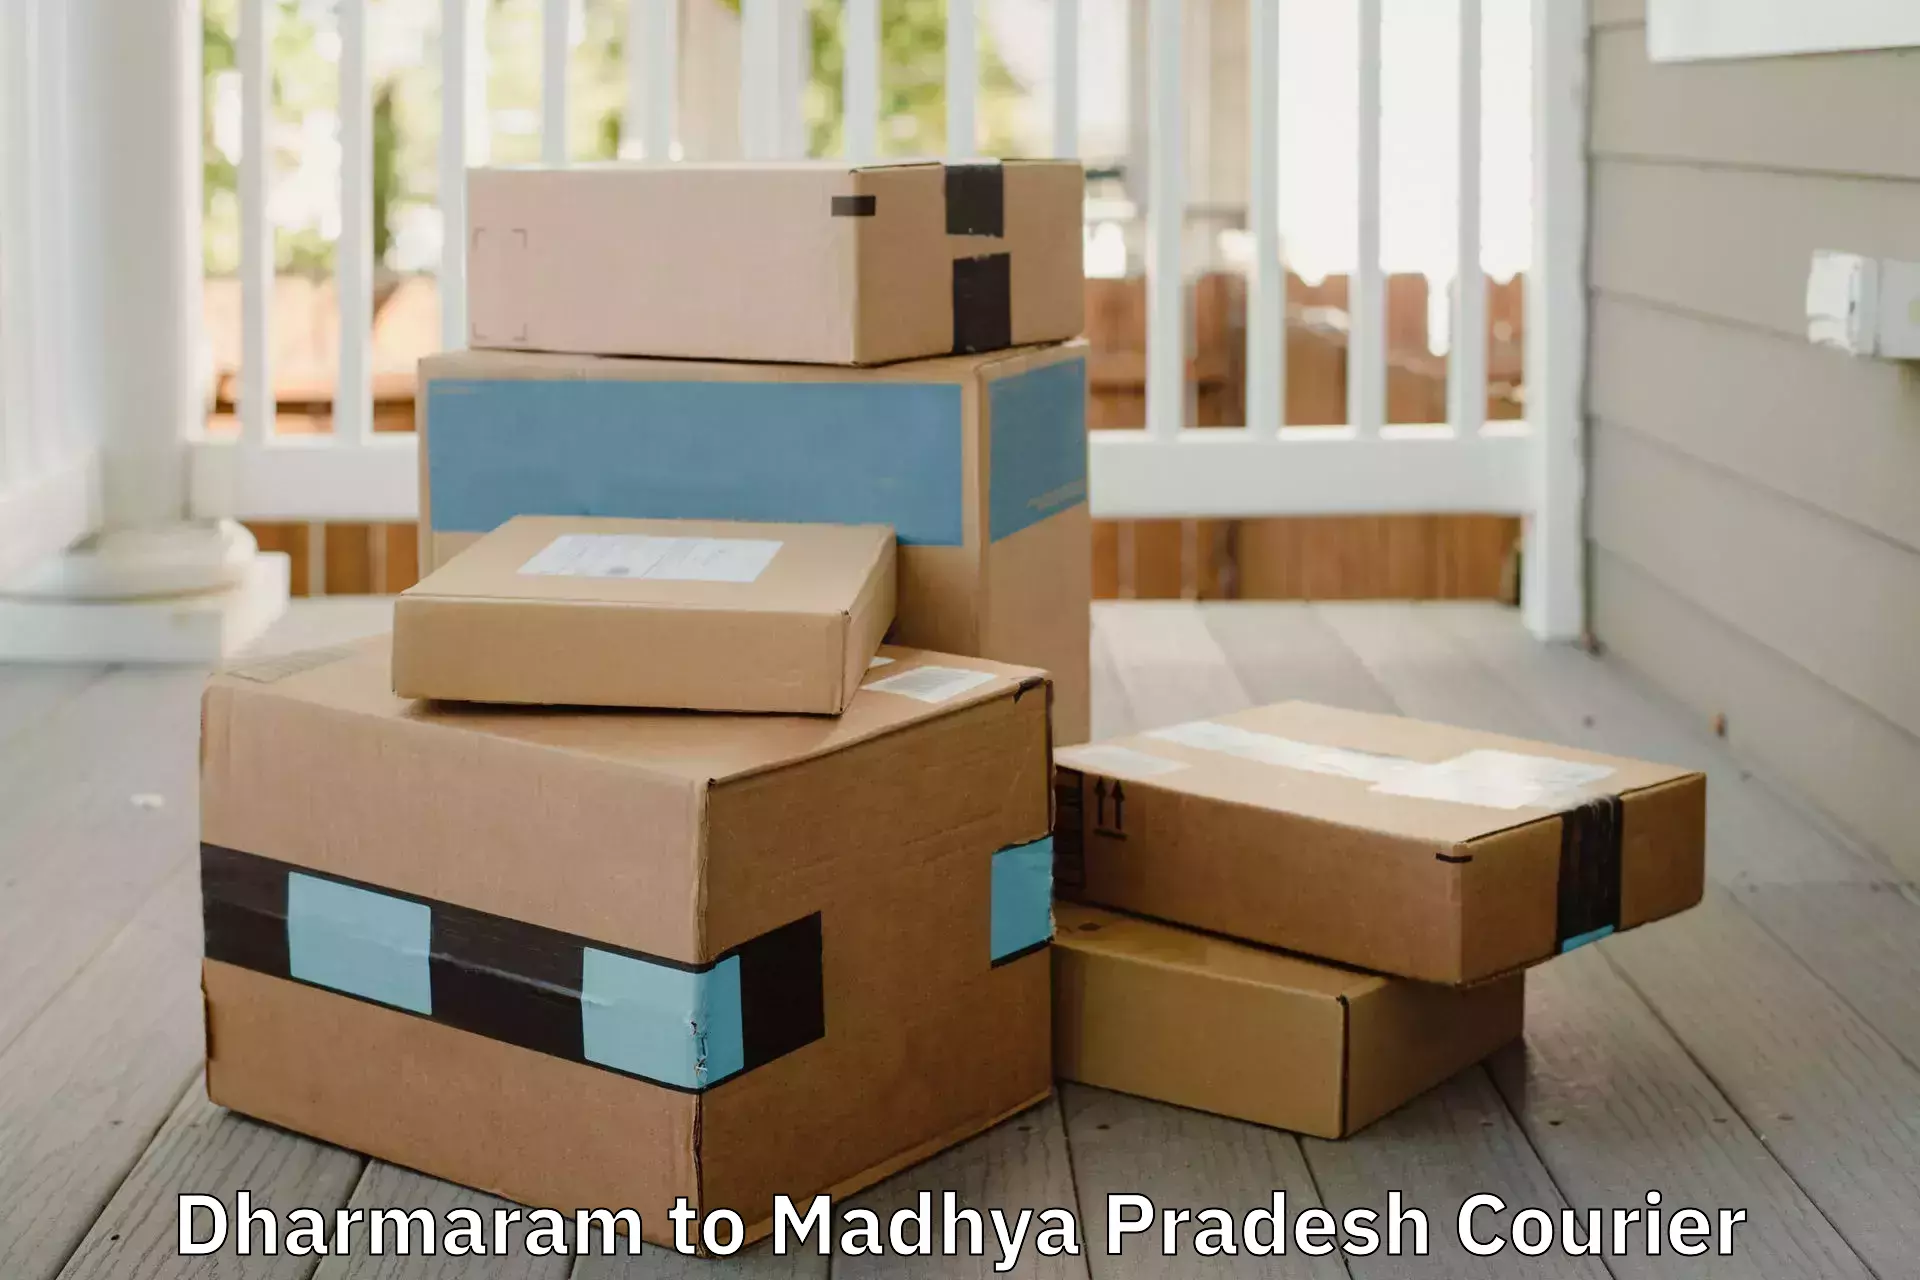 Professional packing and transport Dharmaram to Gadarwara